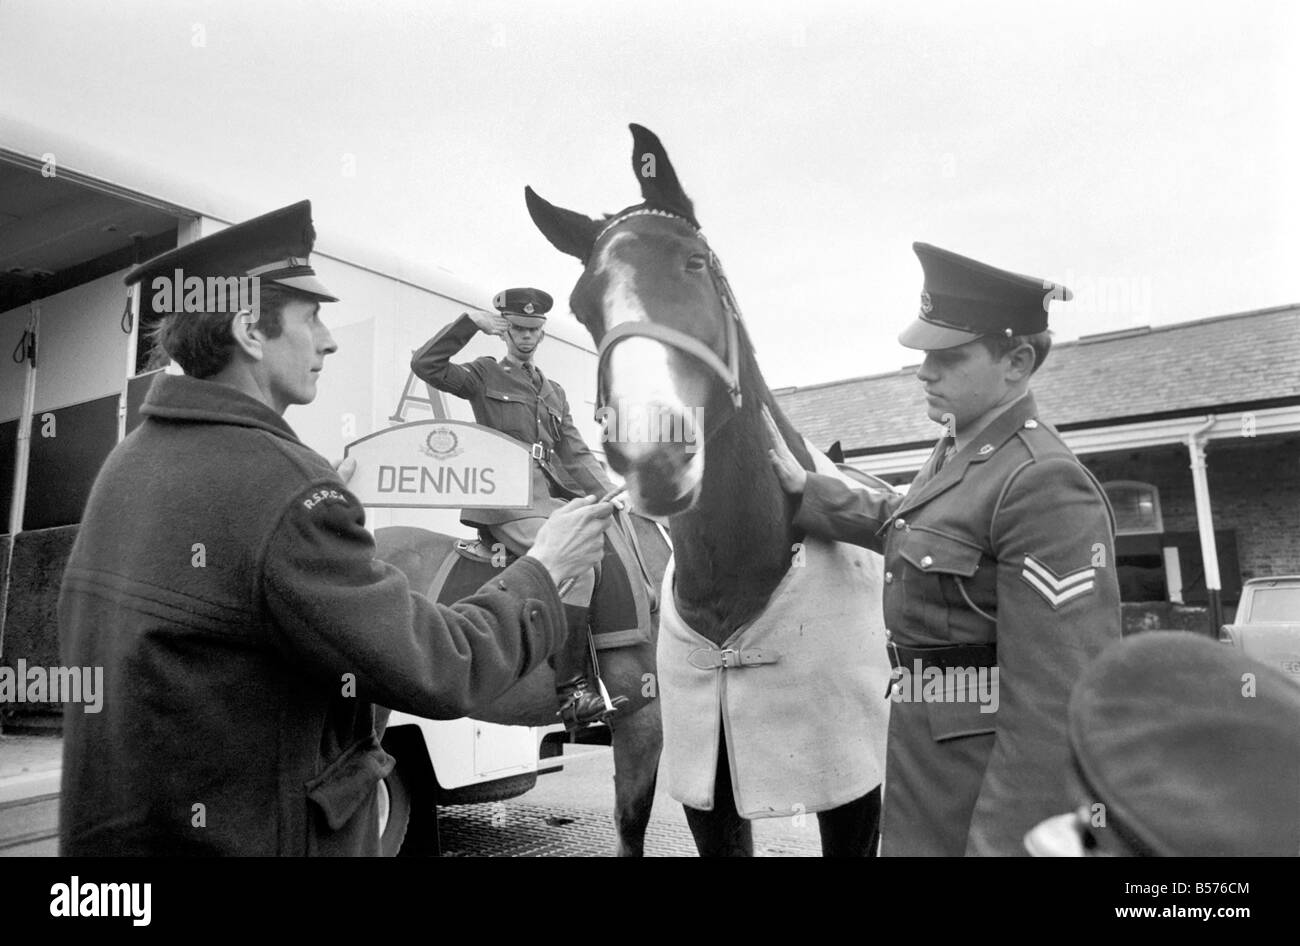 Dennis ist das erste Armee Pferd unter die jüngste Vereinbarung zwischen der RSPCA und des Verteidigungsministeriums in den Ruhestand gehen. Heute wurde bei Beaumont Barracks, Aldershot, Dennis die RSPCA übergeben. Dennis mit seinem Reiter CPL. Peter Spooner bevor er übergab die RSPCA. Dezember 1969 Z12359-003 Stockfoto